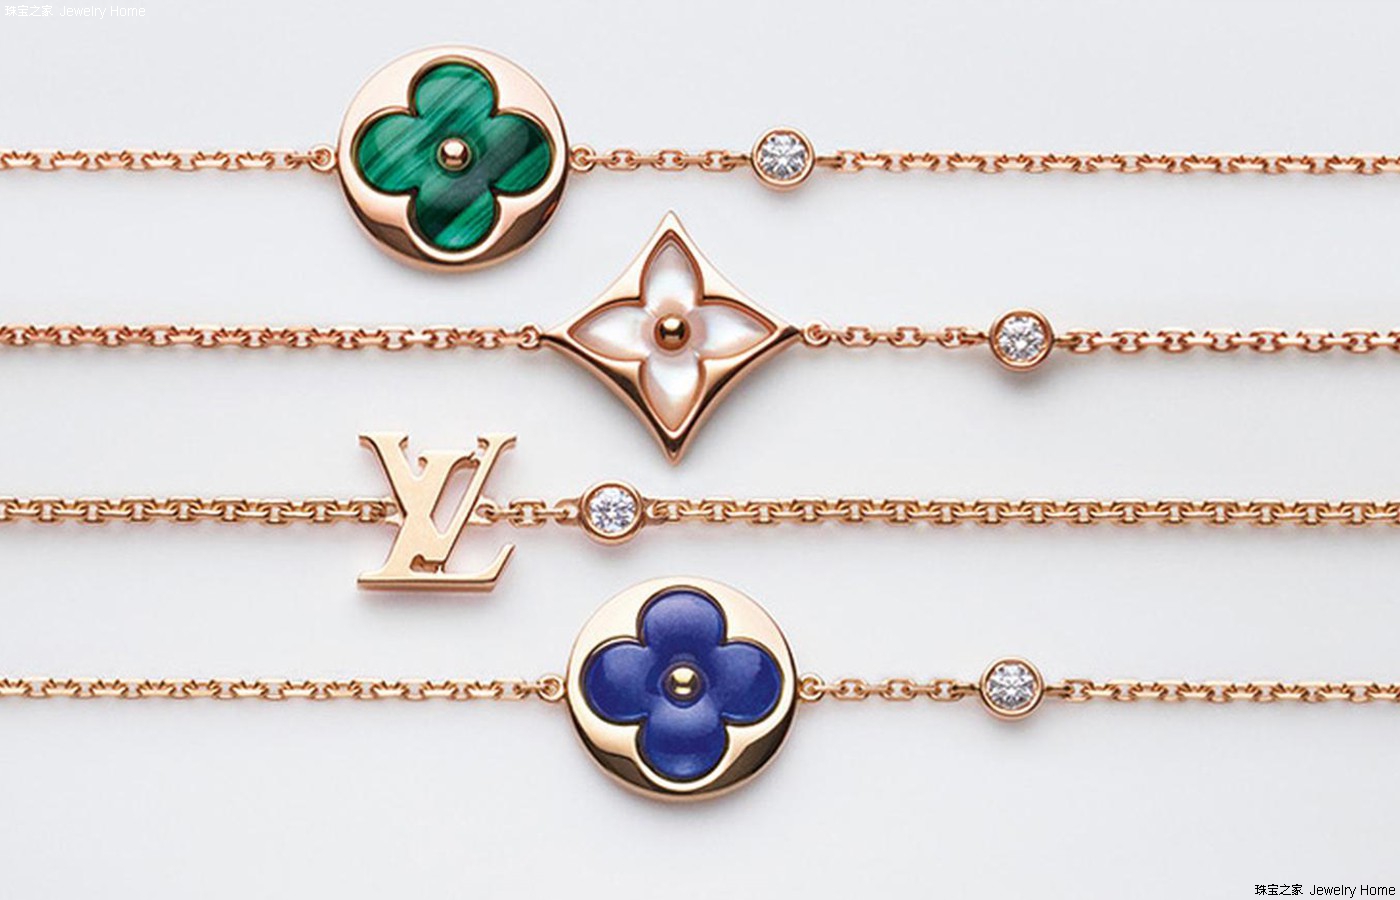 Louis Vuitton Color Blossom Star Bracelet Q95466 Pink Gold (18K